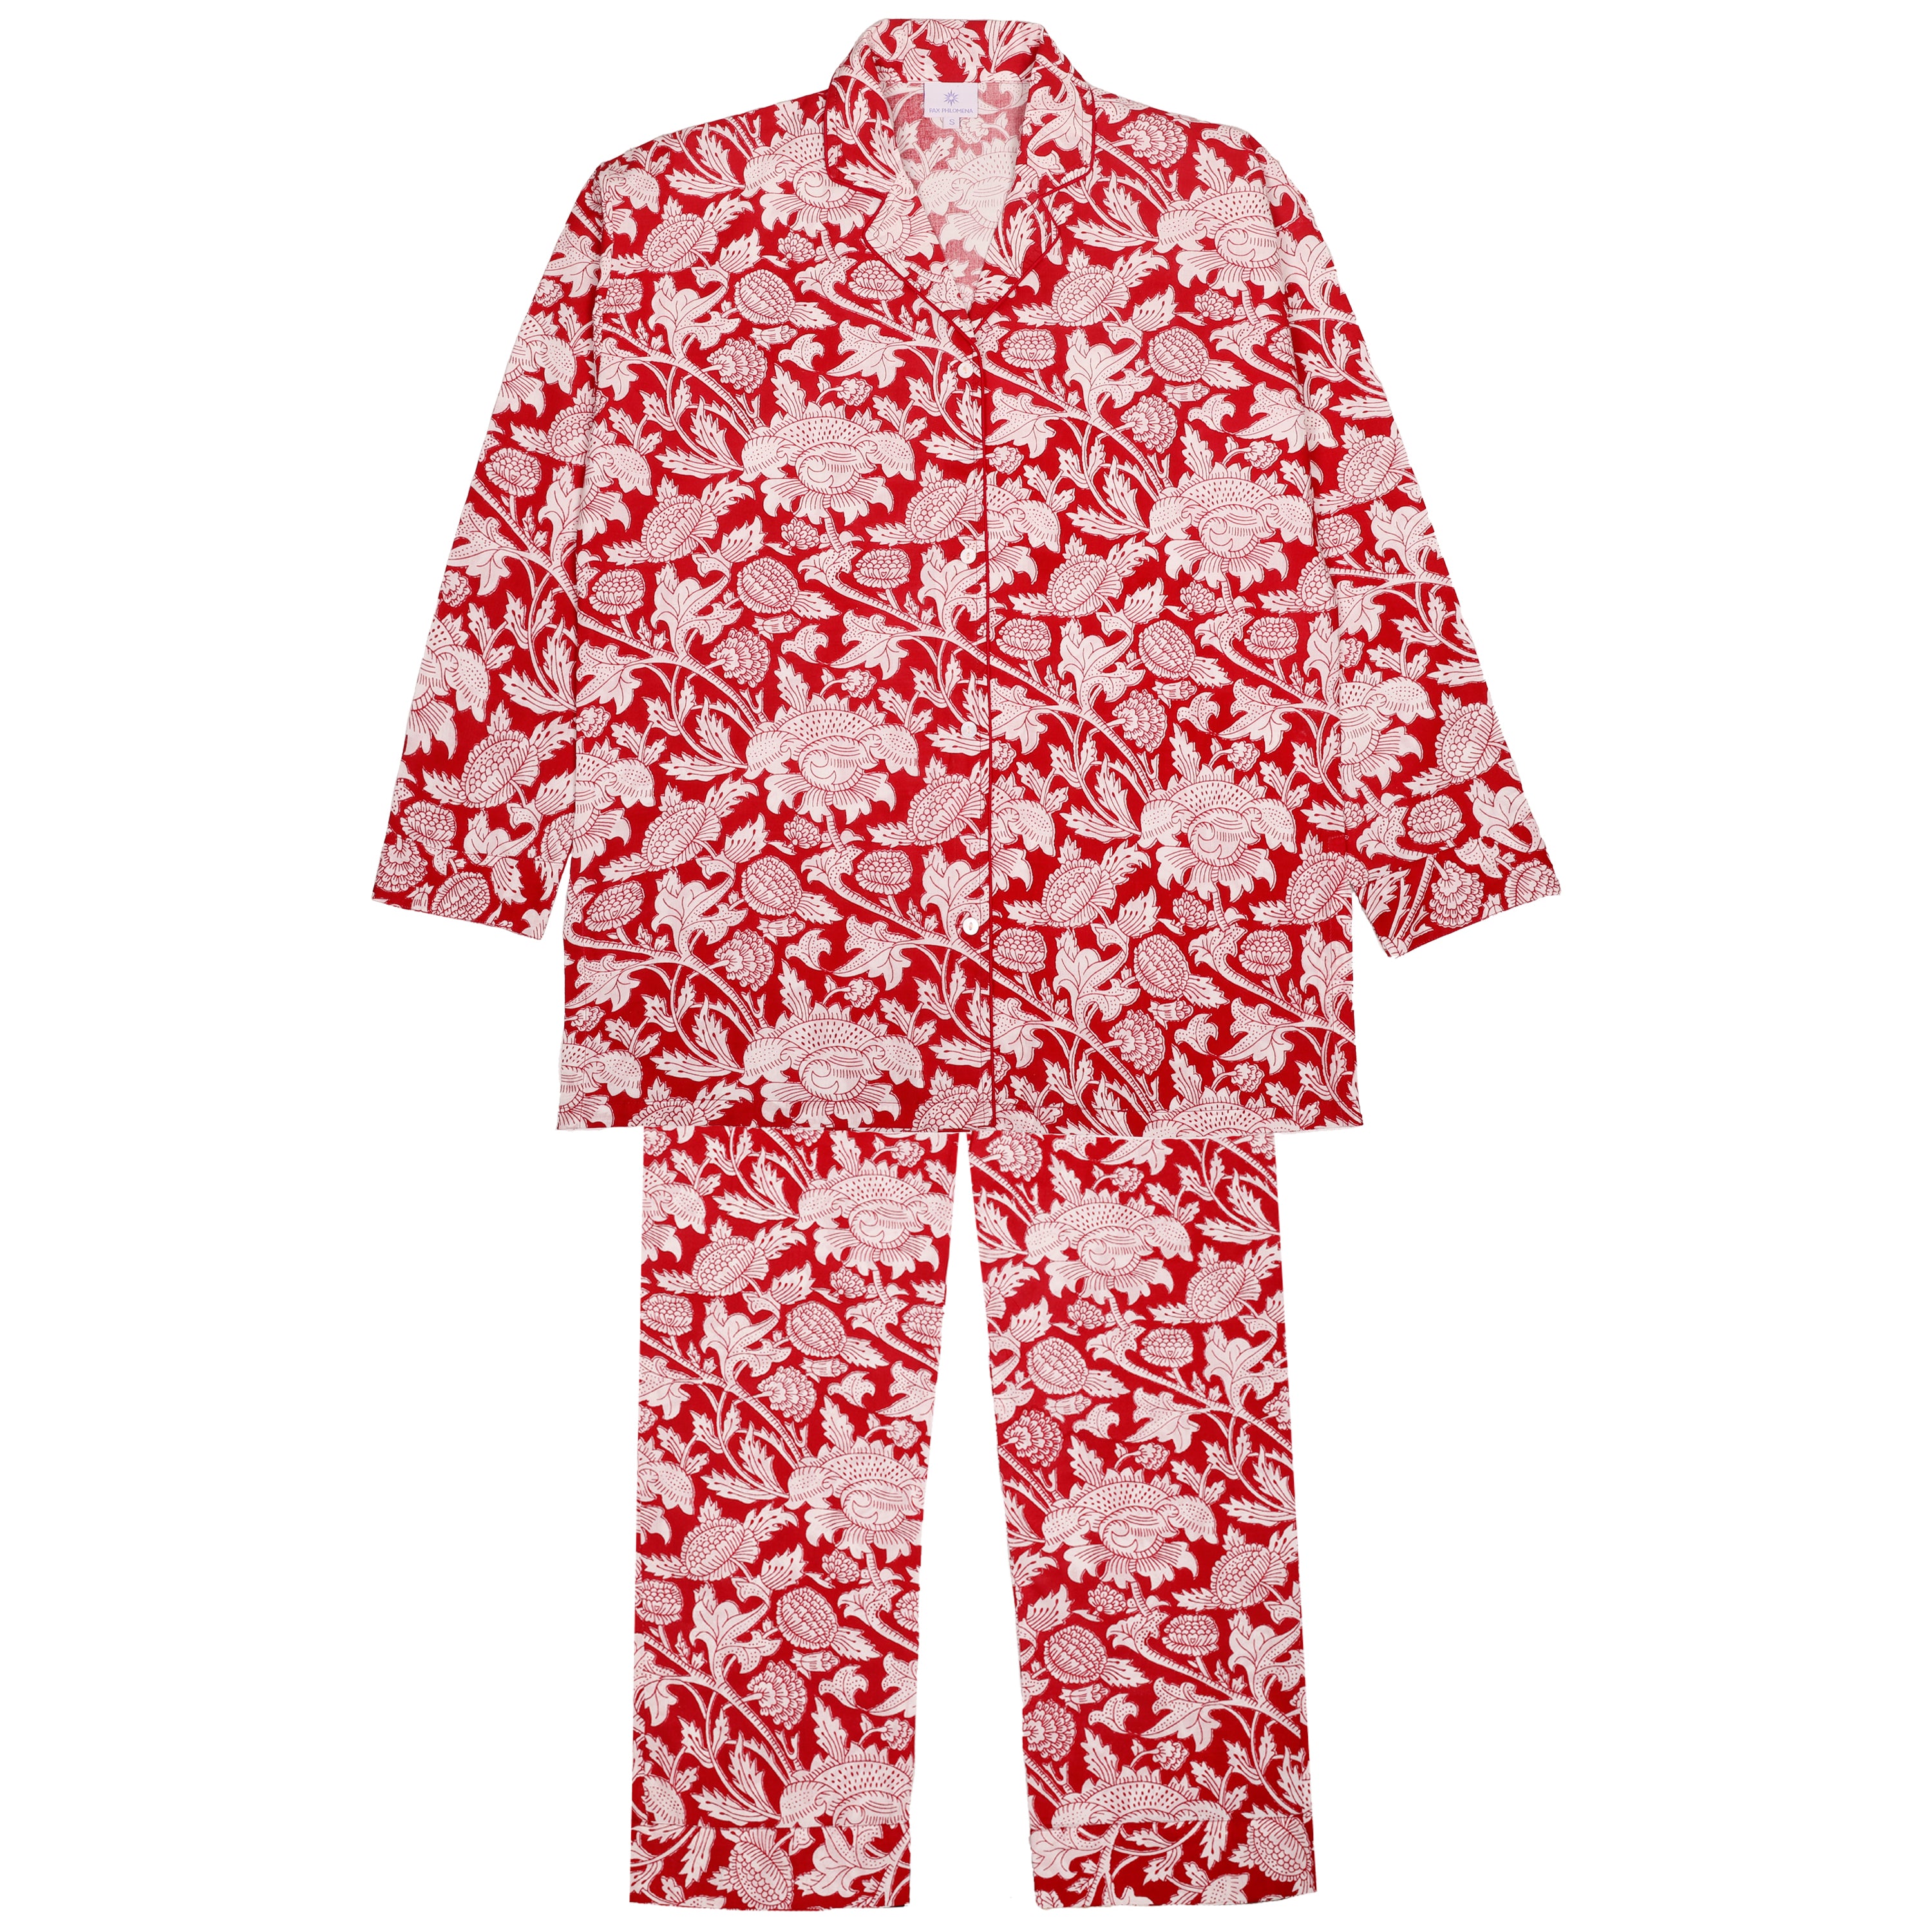 Cotton Flannel Pajama Pants in a Bag – Oleander Floral Design